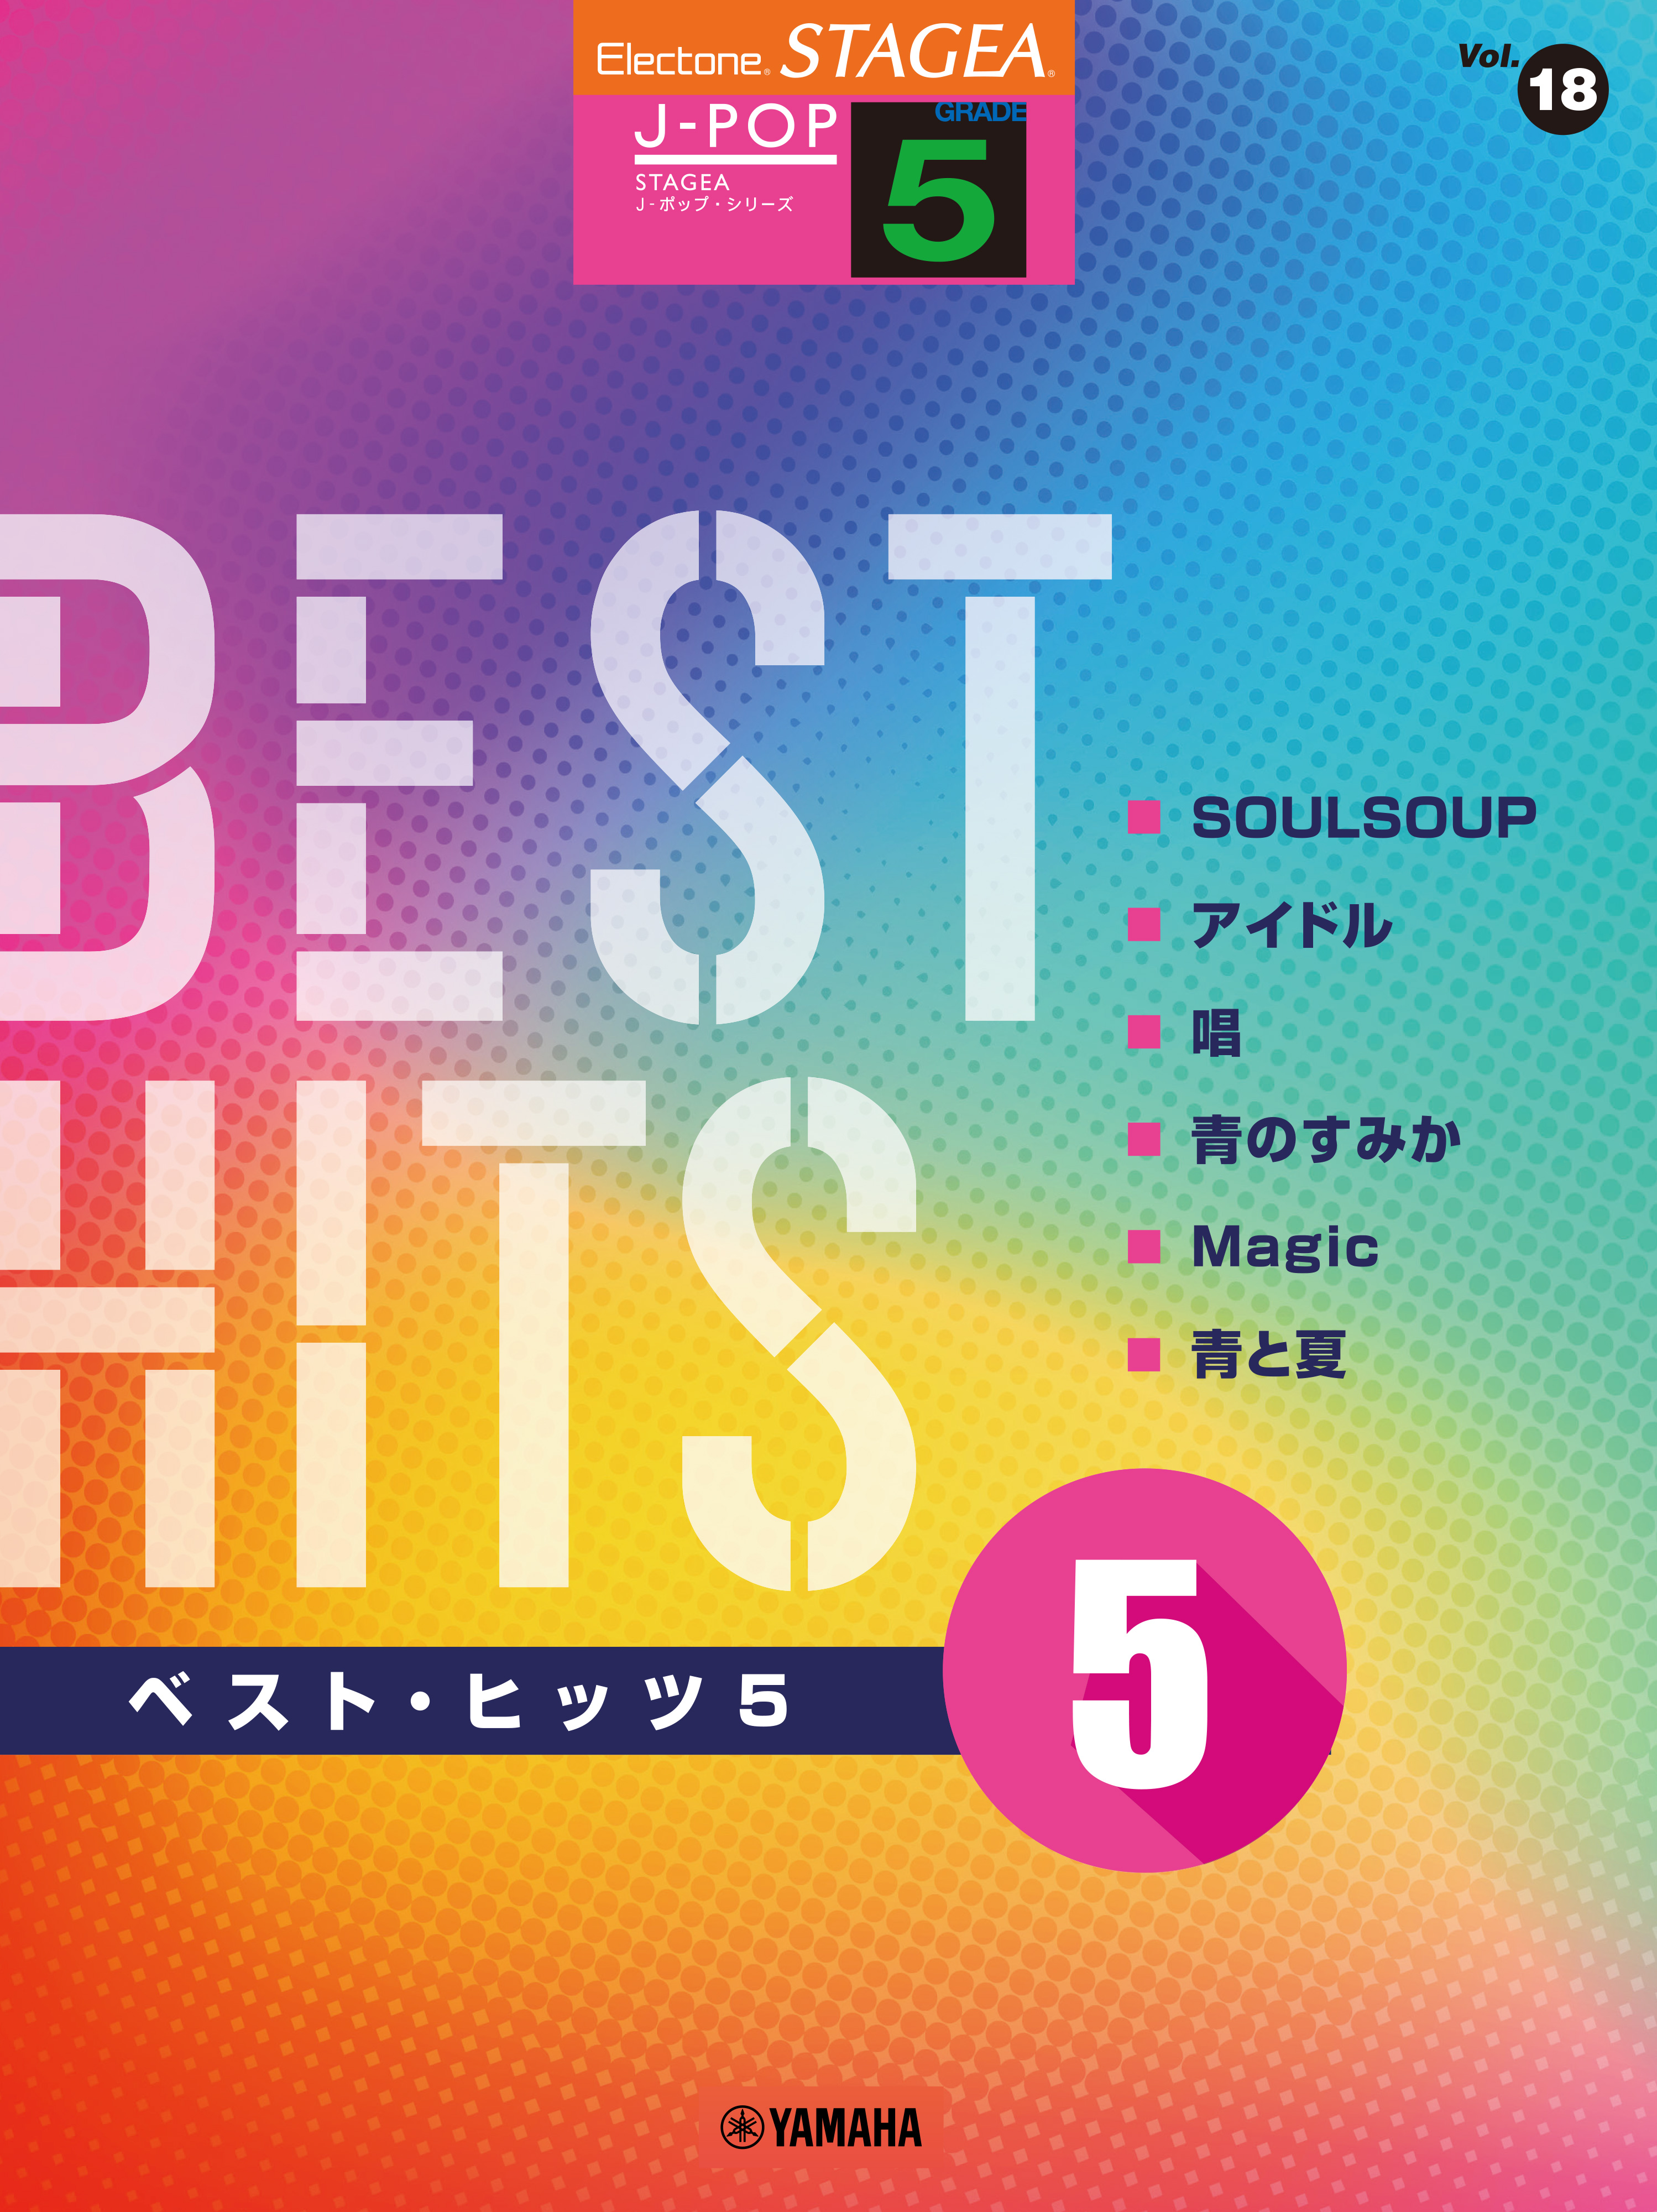 エレクトーン STAGEA J-POP 5級 Vol.18 ベスト・ヒッツ5」 2月26日発売